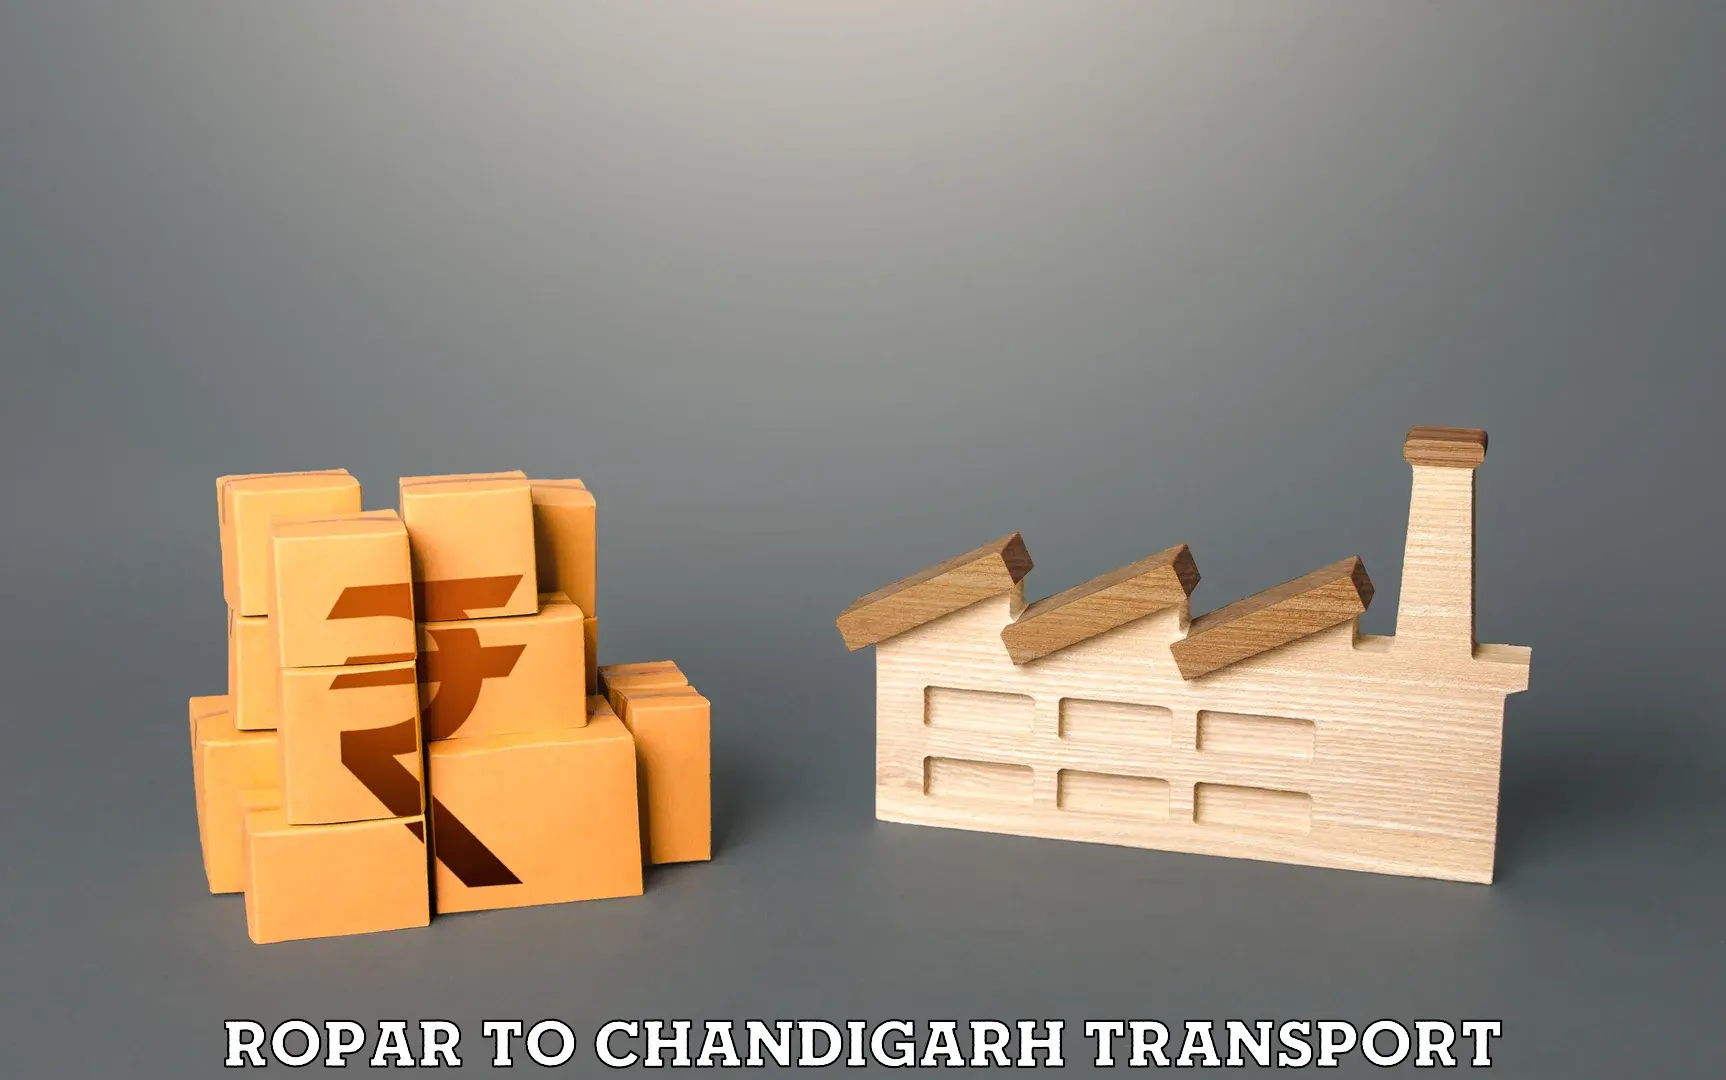 Online transport service Ropar to Chandigarh